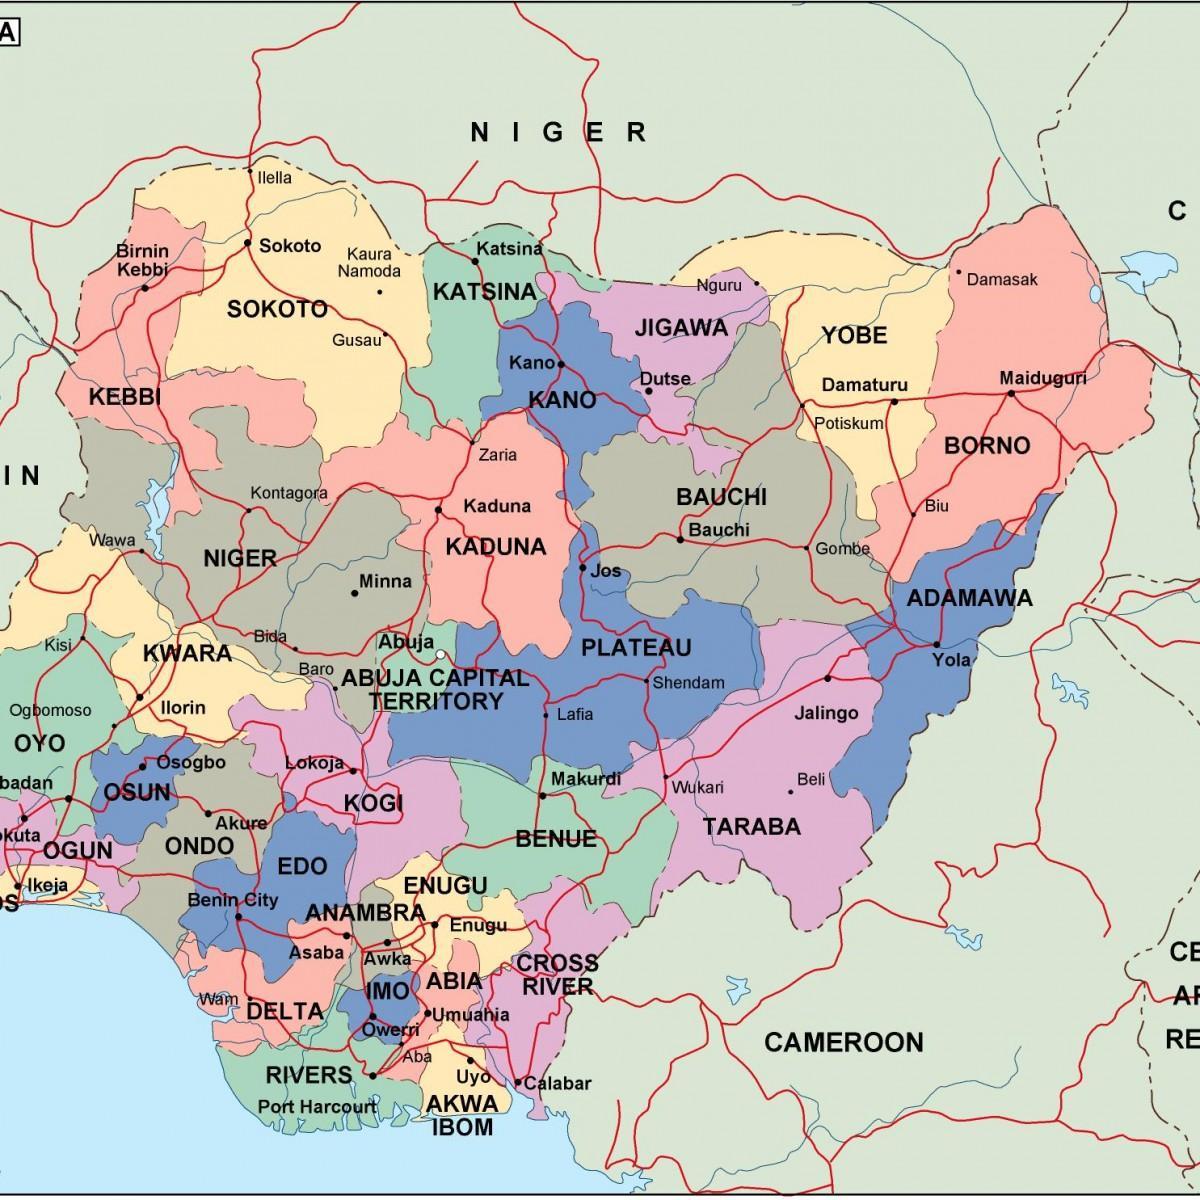 Peta nigeria dengan syarikat dan kota-kota